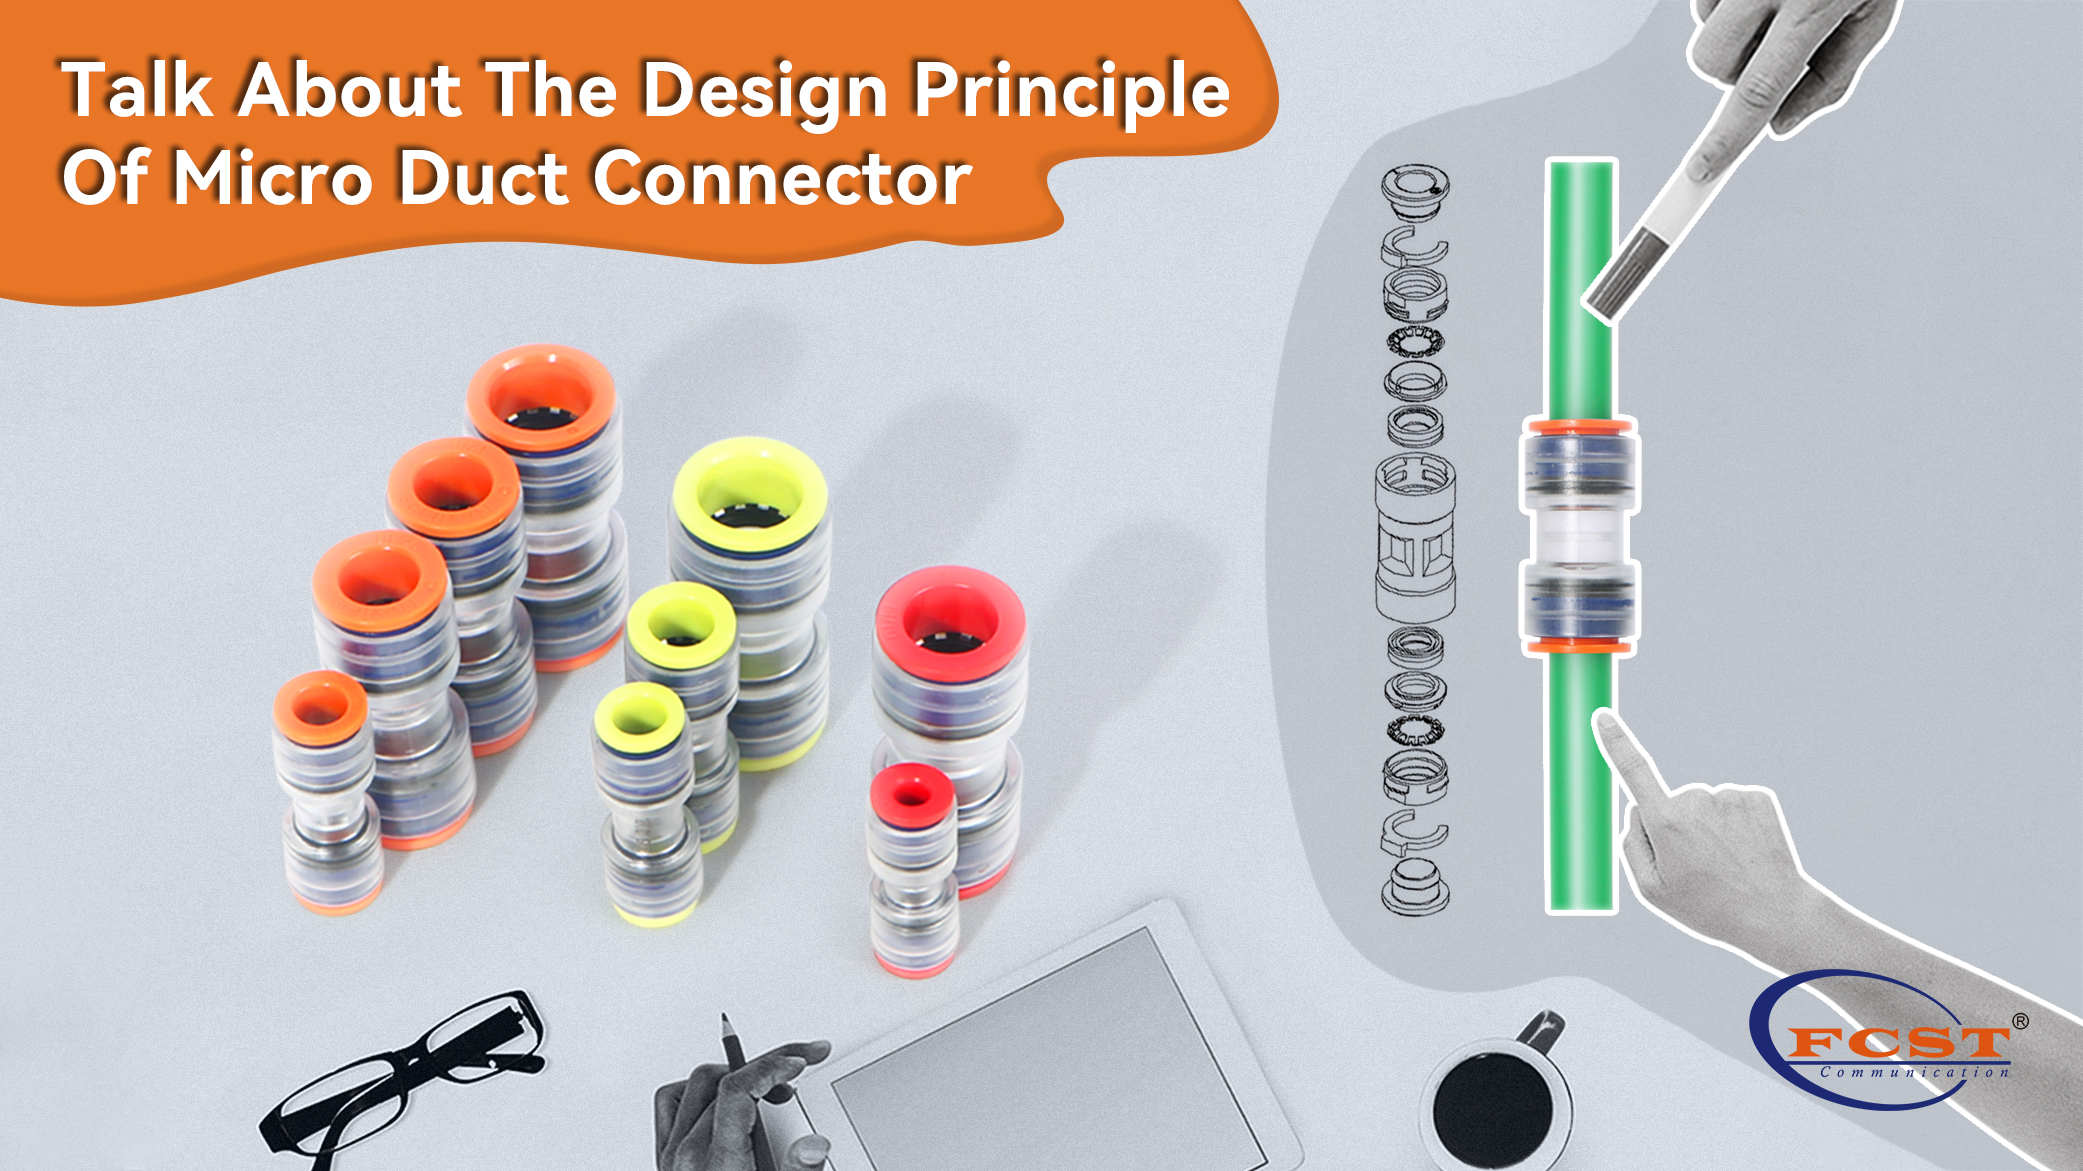 Hable sobre el principio de diseño de los conectores de micro conducto